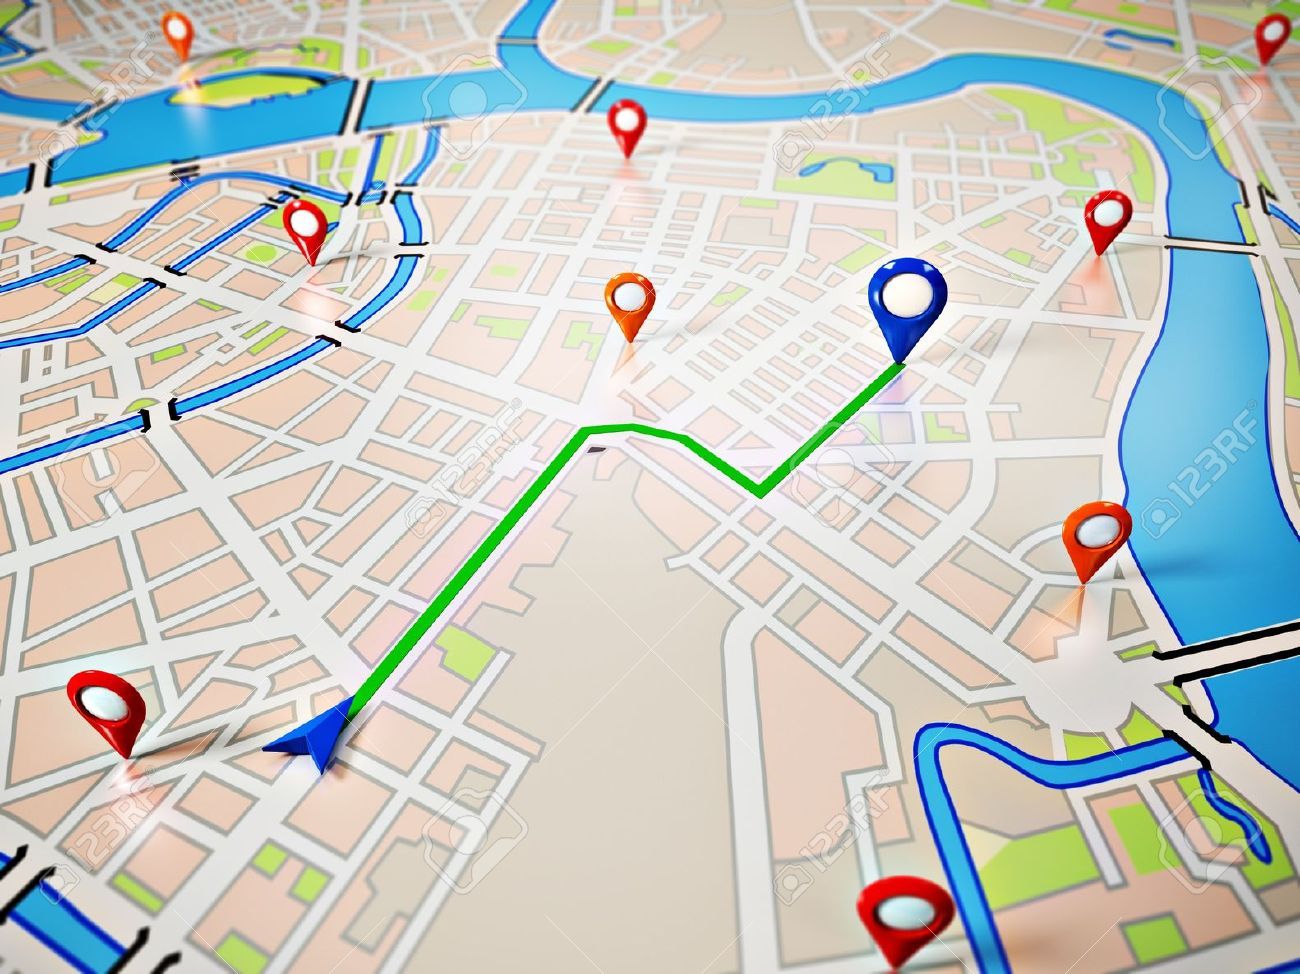 Le suivi GPS est-il une atteinte à la vie privée de vos employés?